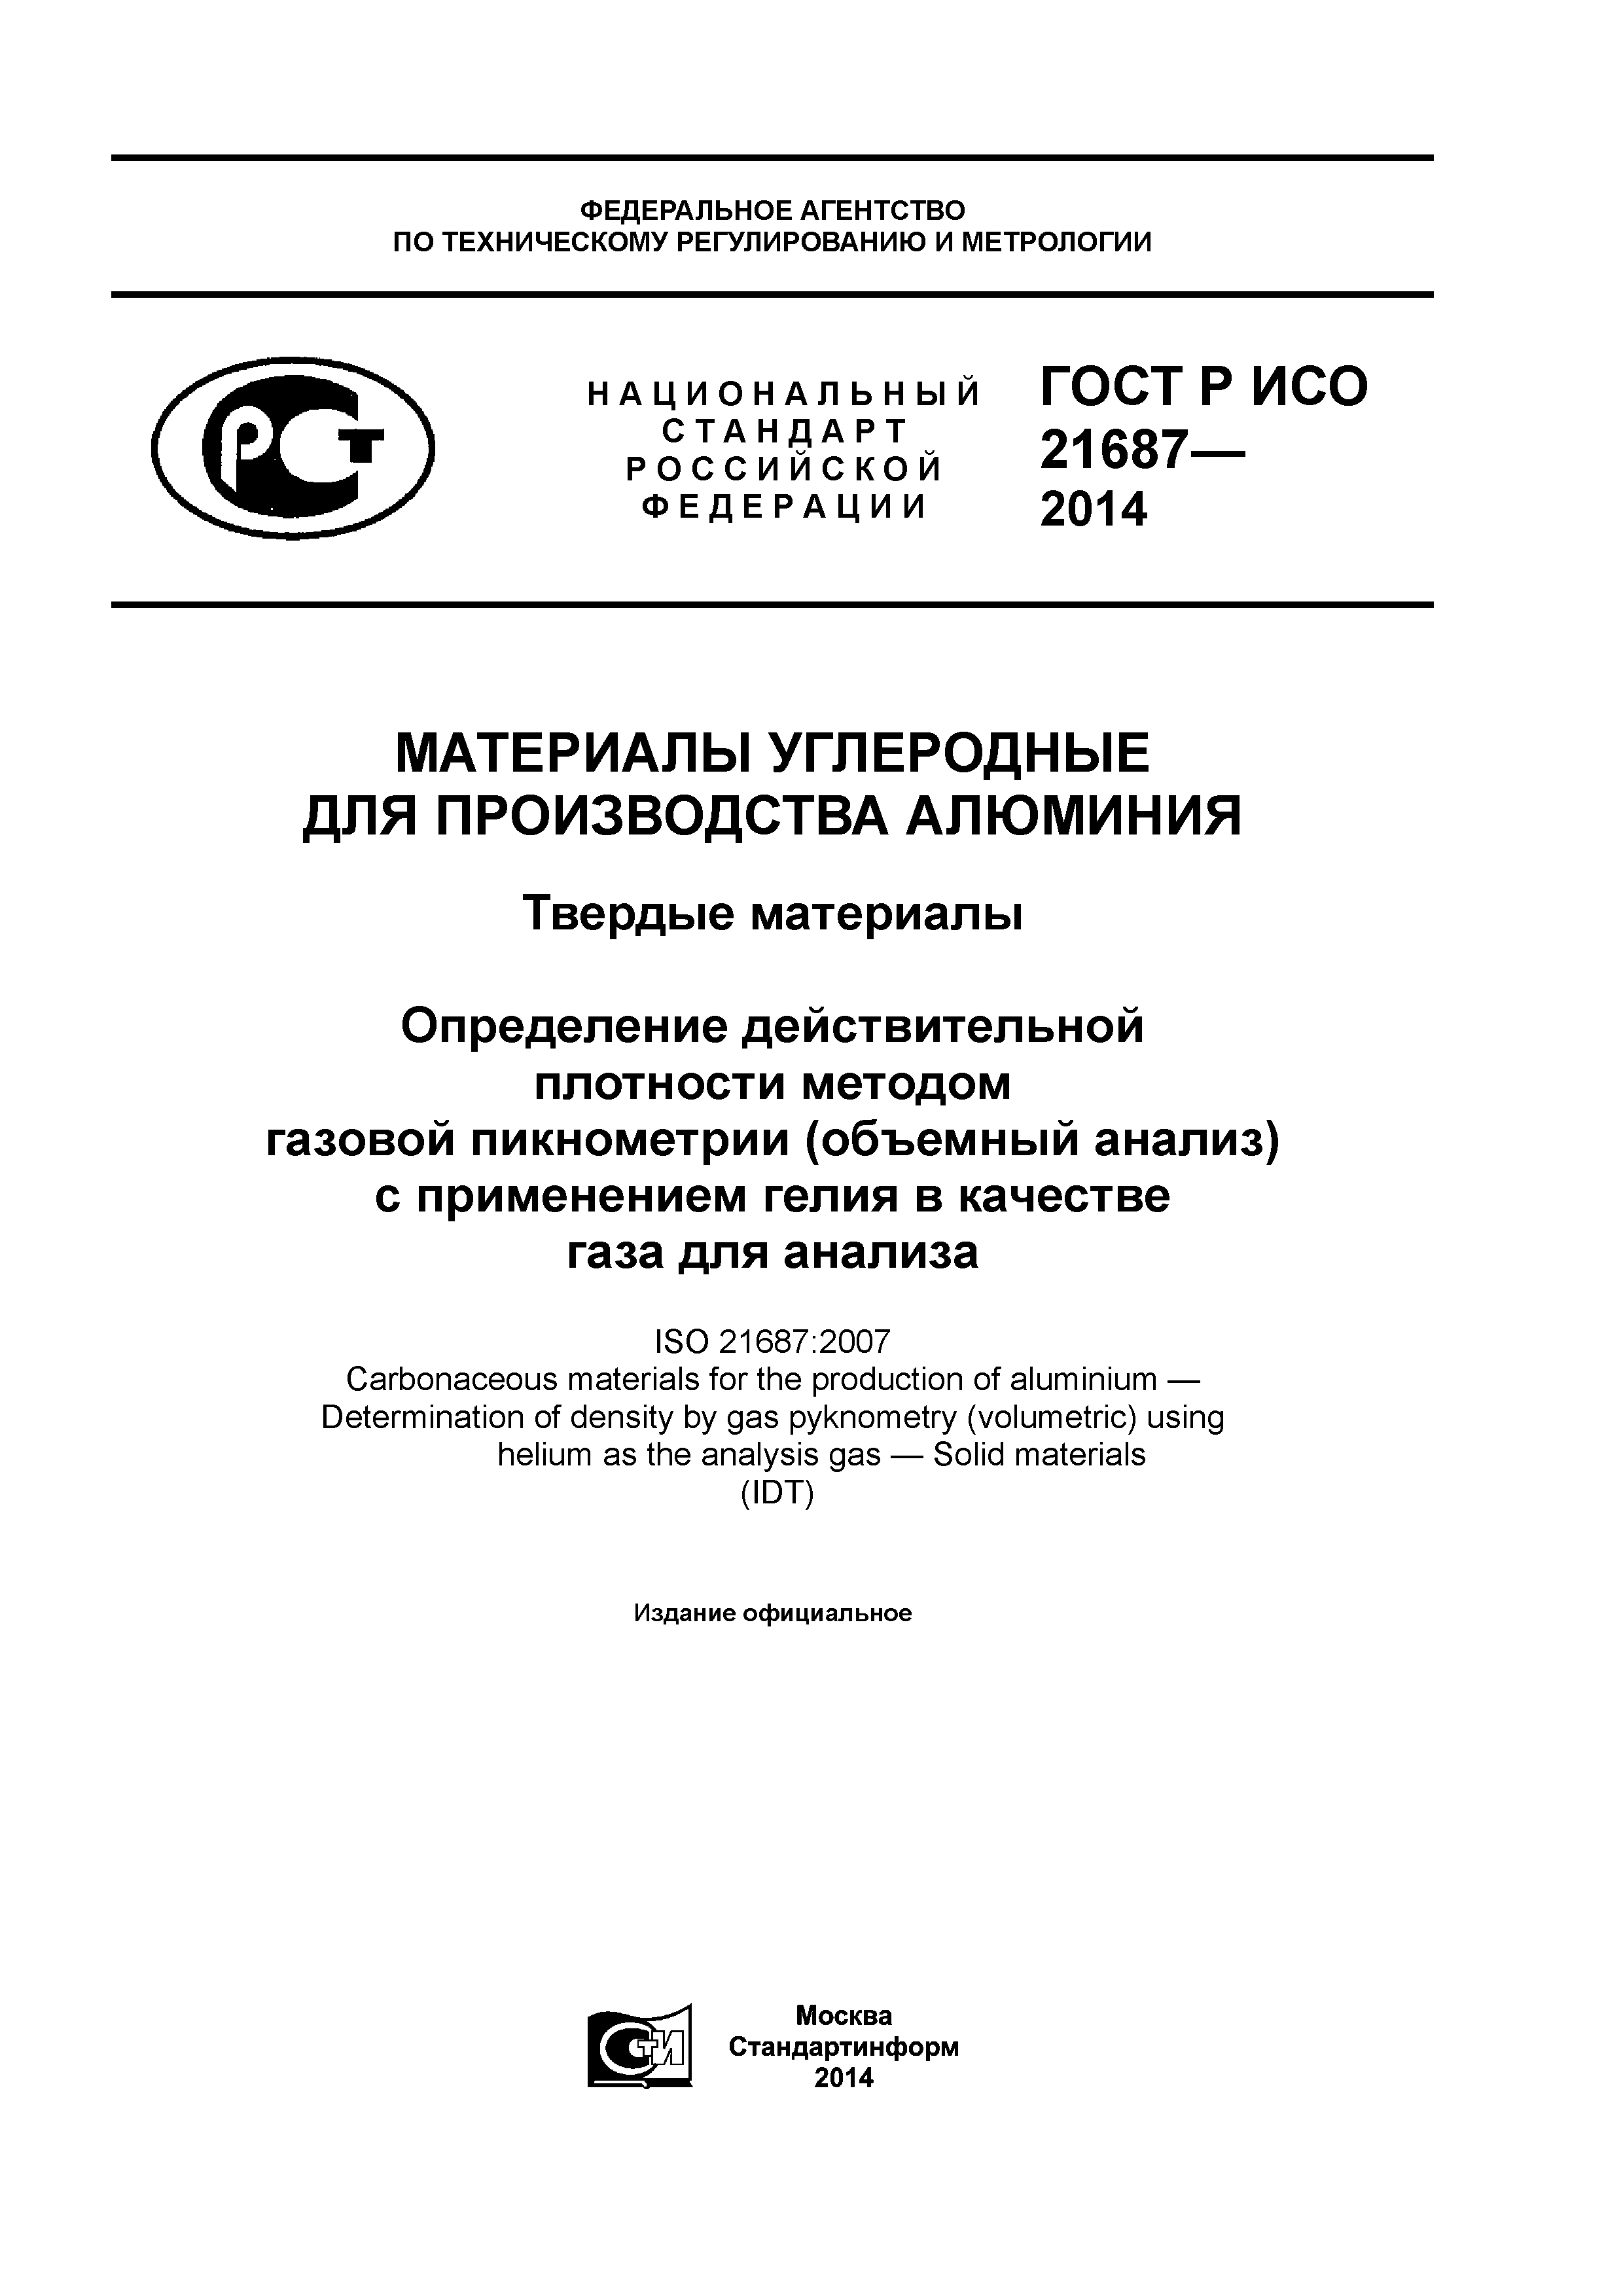 ГОСТ Р ИСО 21687-2014